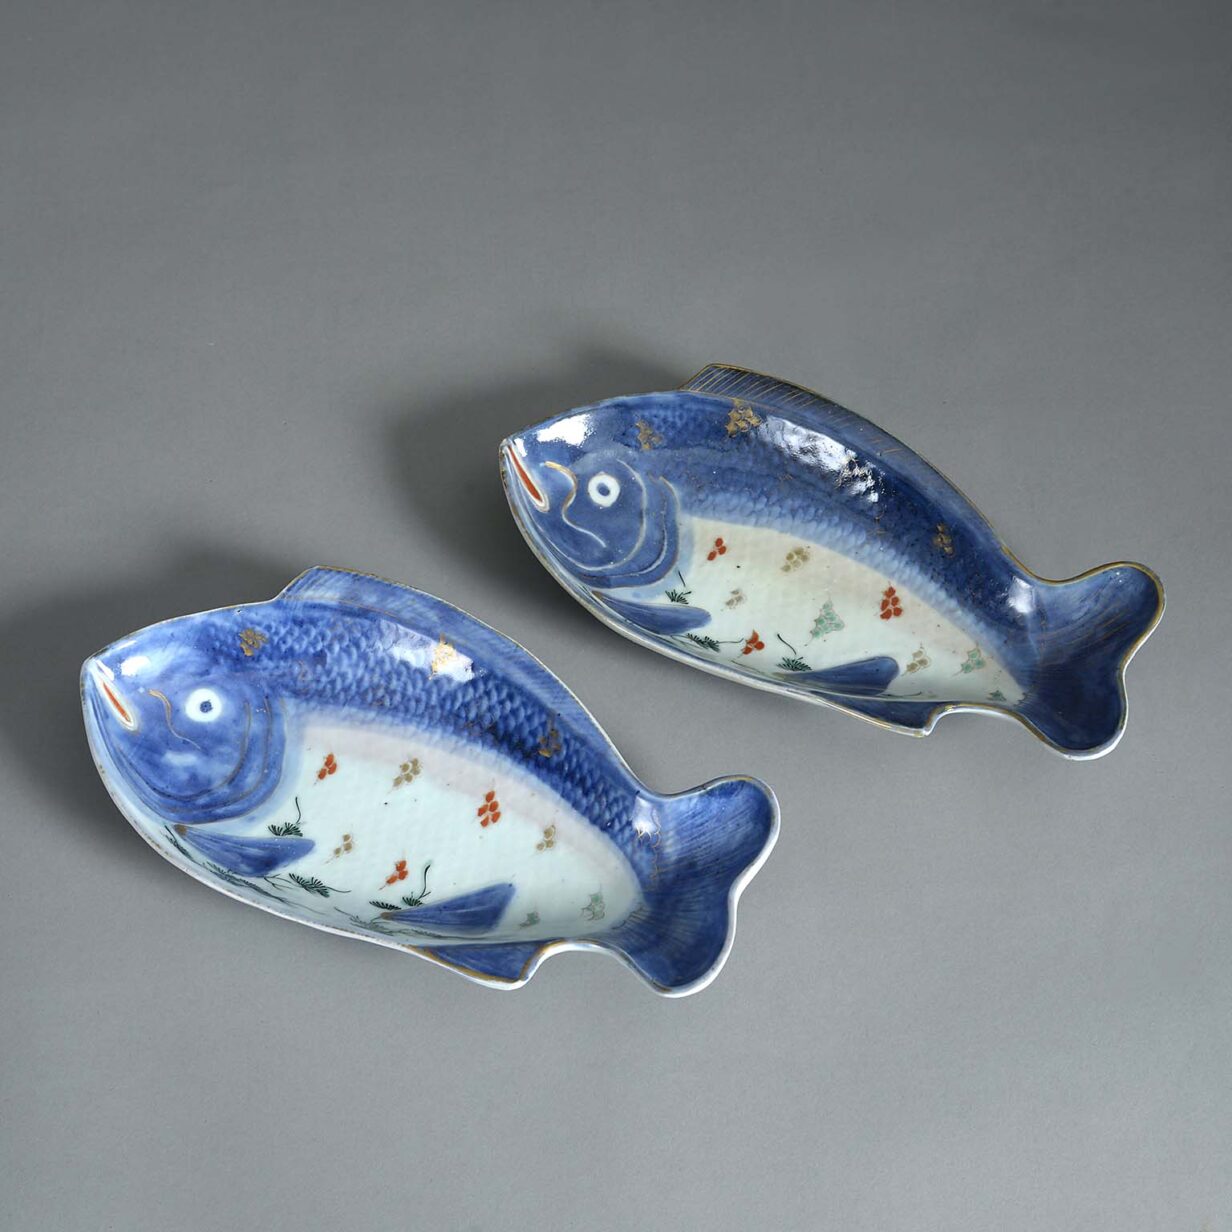 Pair of 17th century imari porcelain fish plates